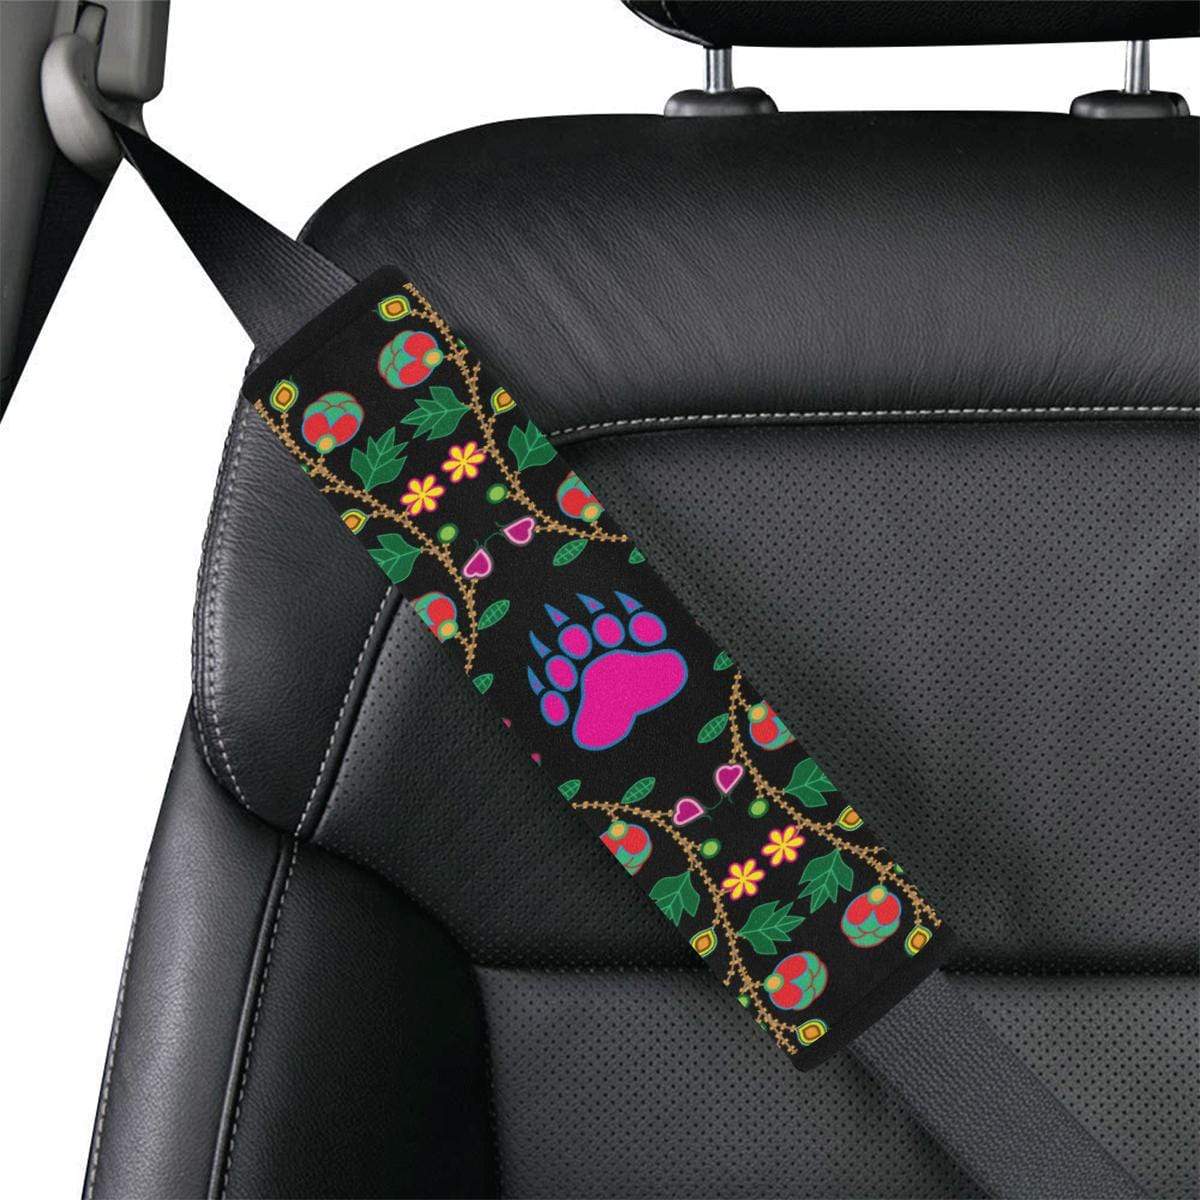 Geometric Floral Fall - Black Car Seat Belt Cover 7''x12.6'' Car Seat Belt Cover 7''x12.6'' e-joyer 